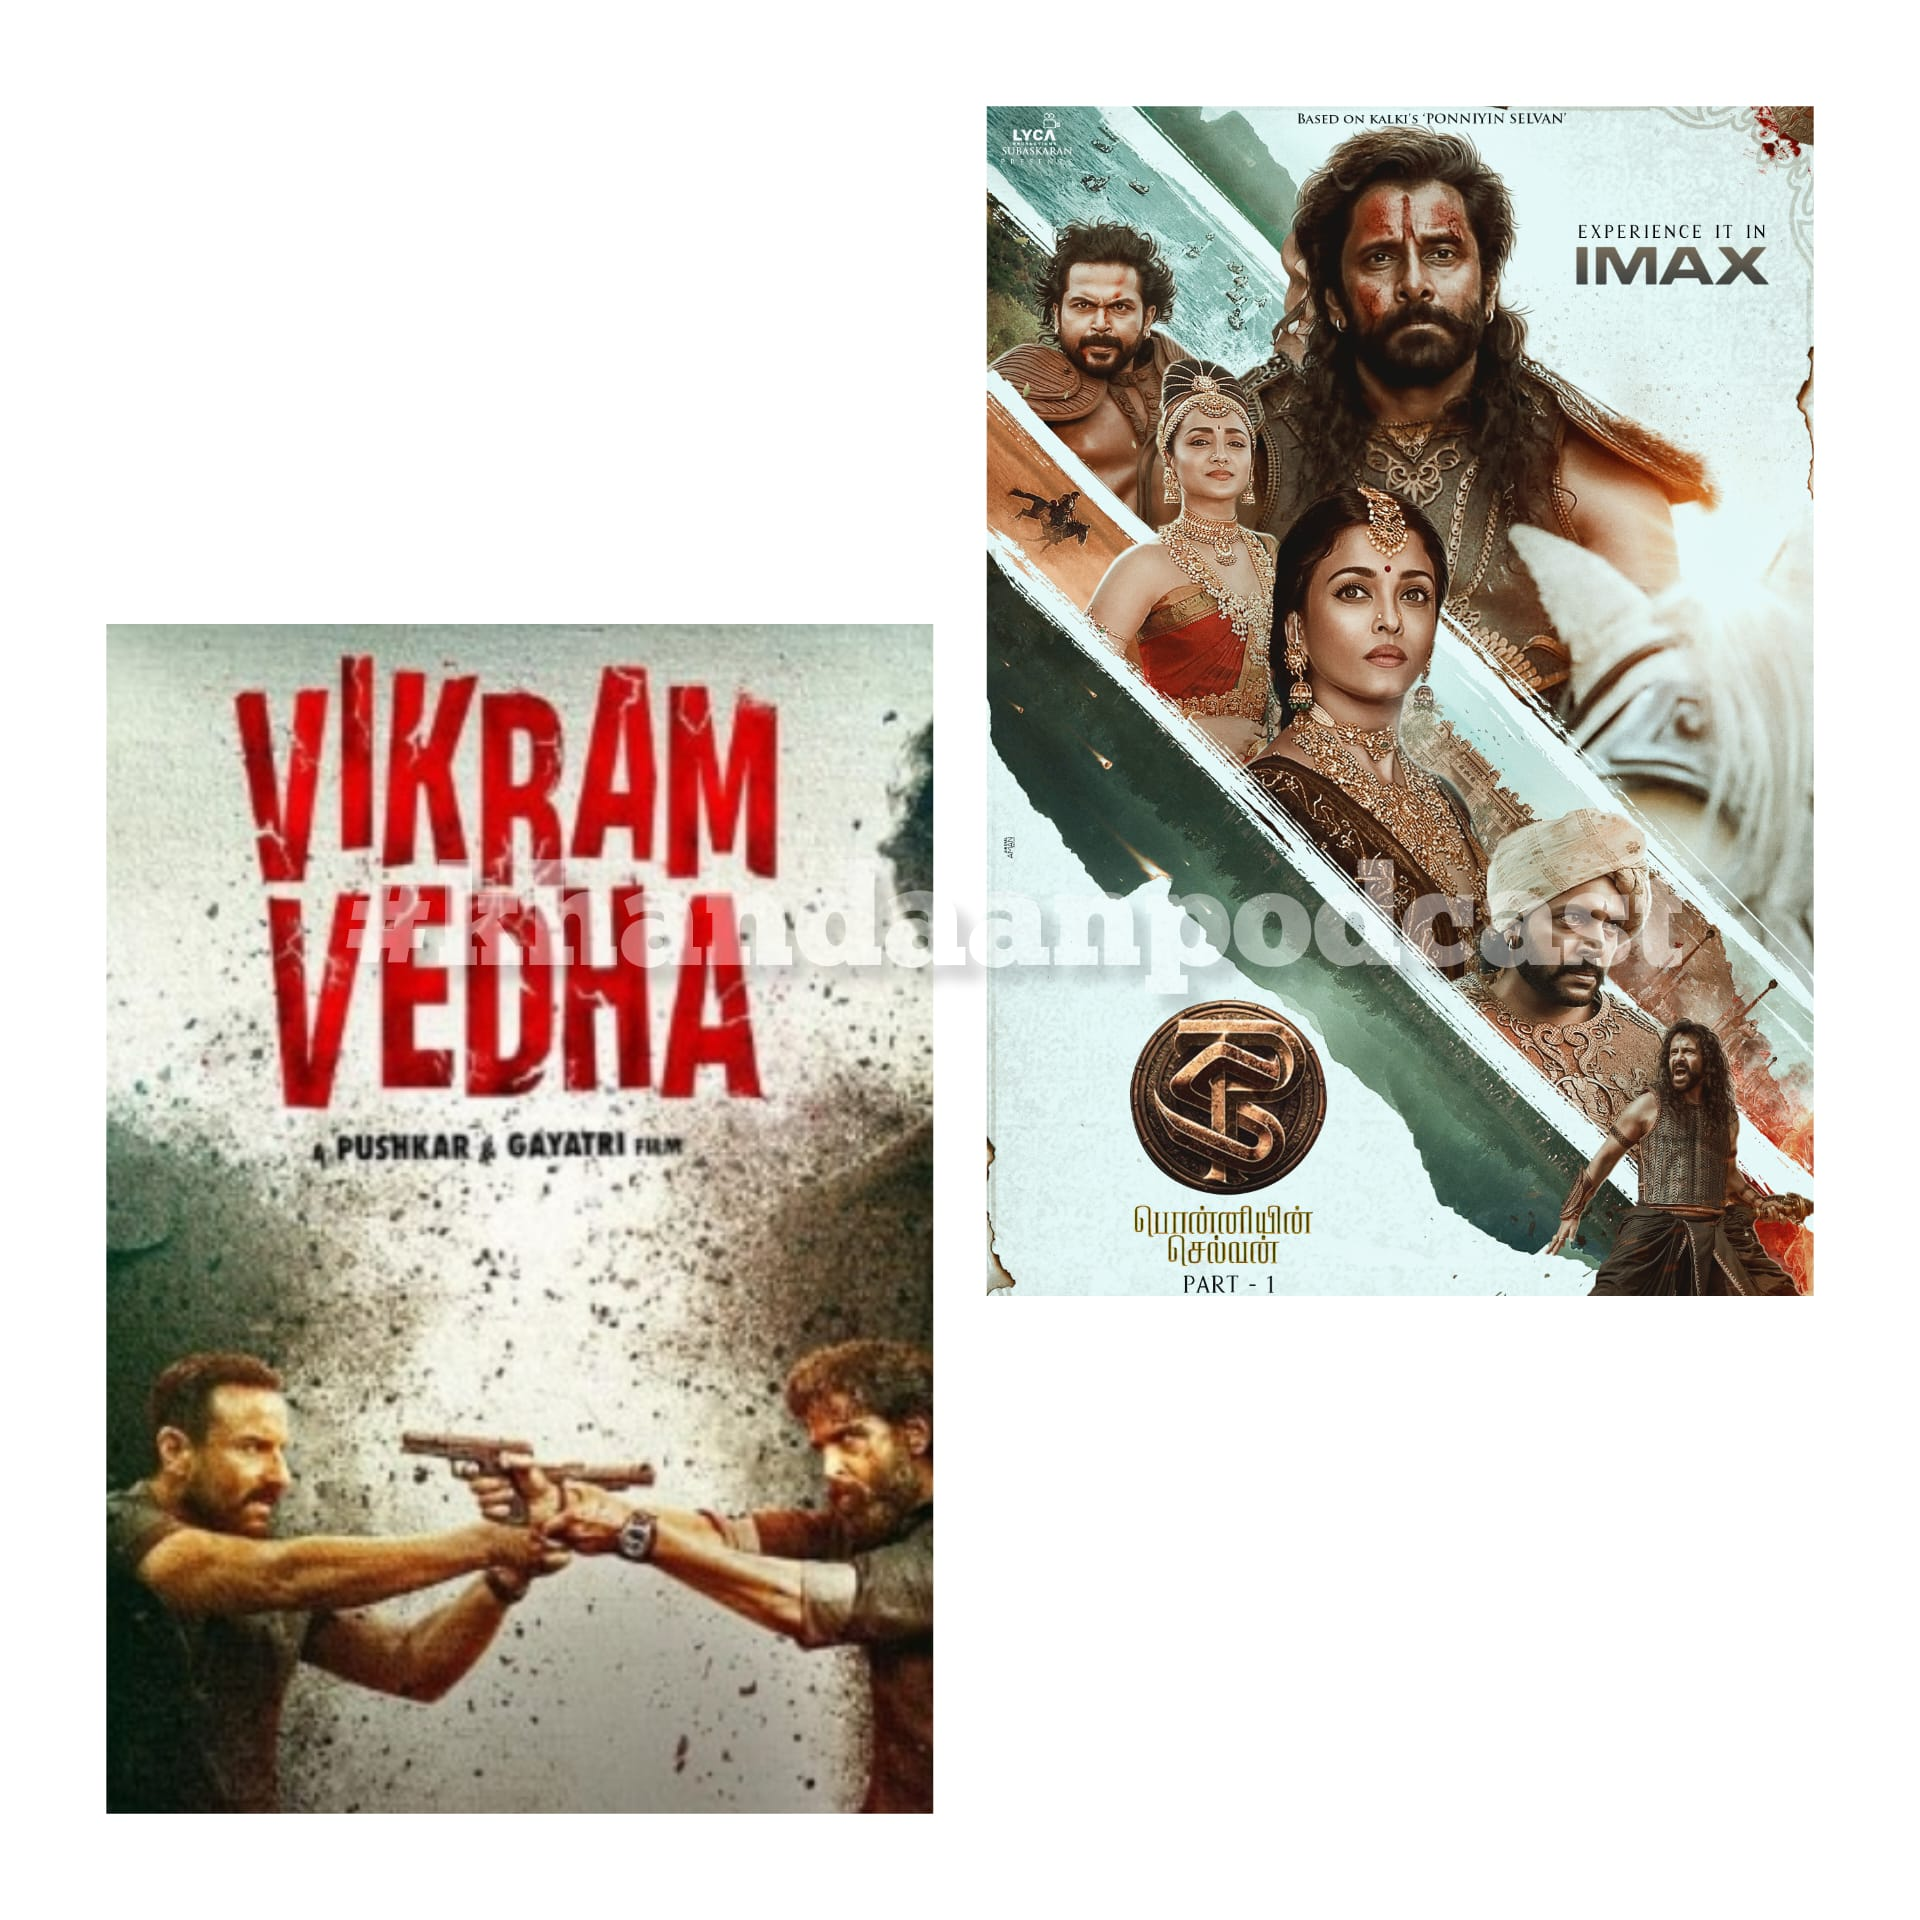 Ep 152- PS1 and Vikram Vedha Reviews + INTV (Radhika Apte, Gayatri and Pushkar)